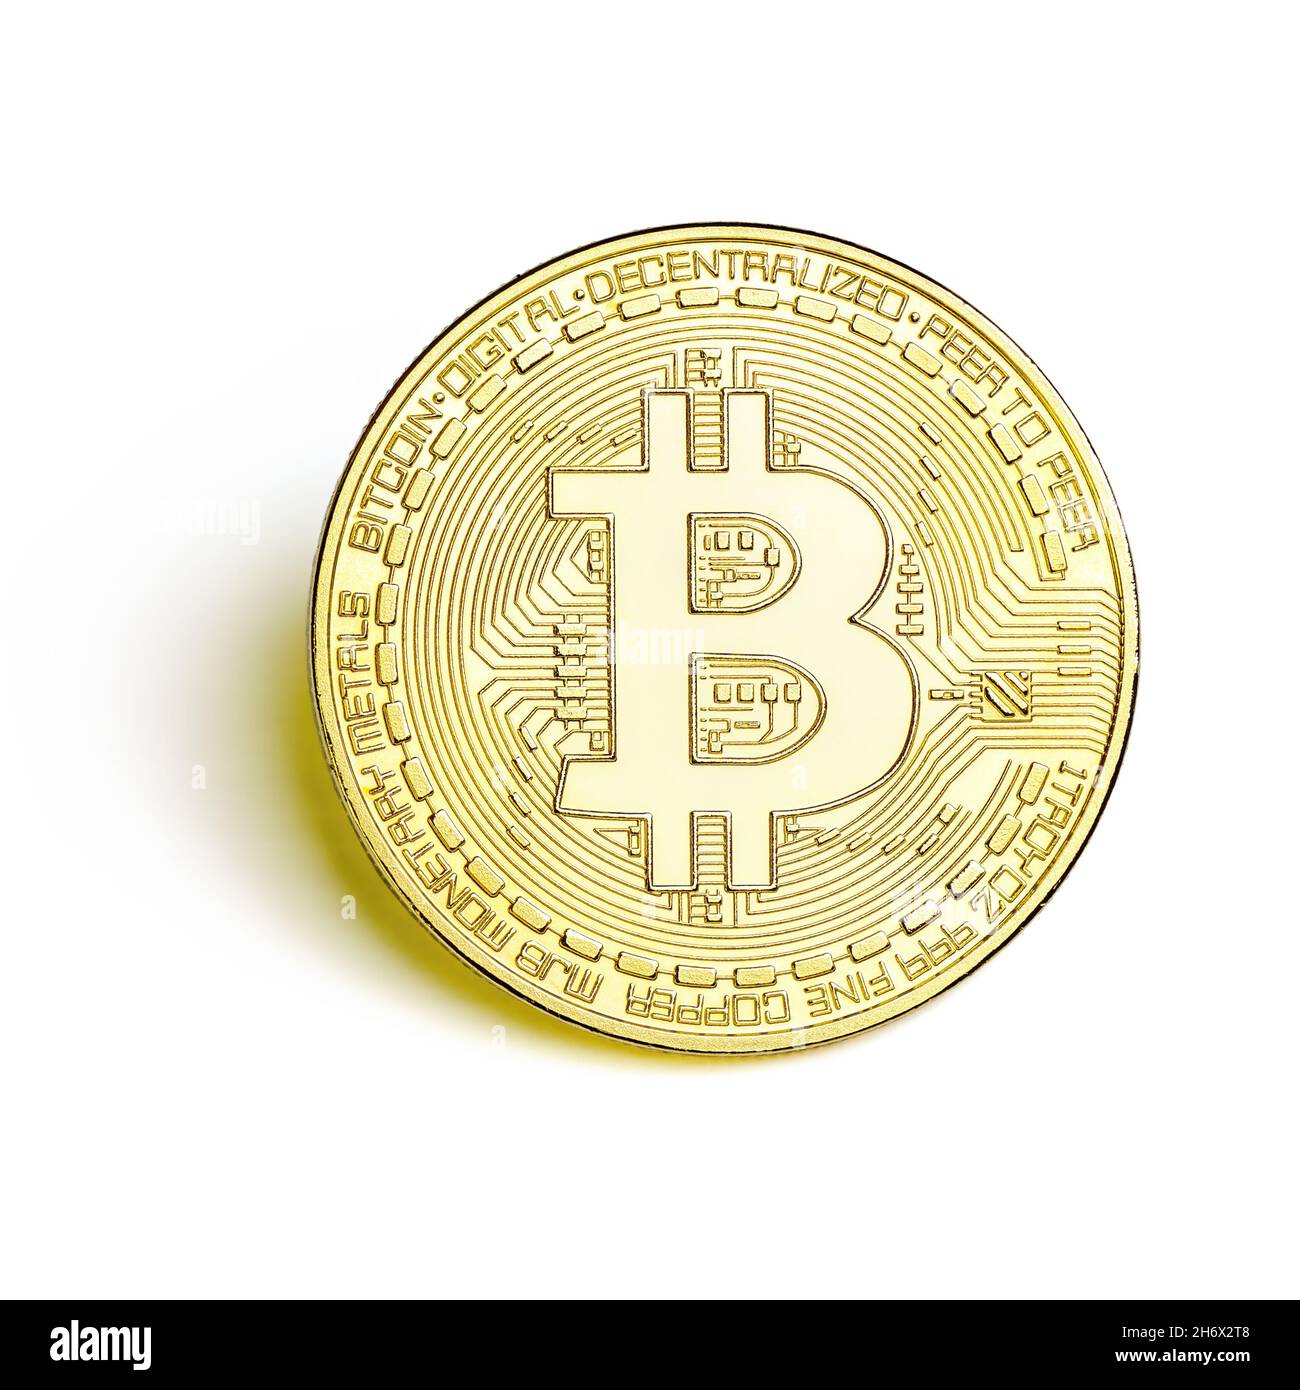 Gros plan de bitcoin doré isolé sur fond blanc de la vue de dessus.Concept de monnaie virtuelle et de crypto-monnaie numérique. Banque D'Images